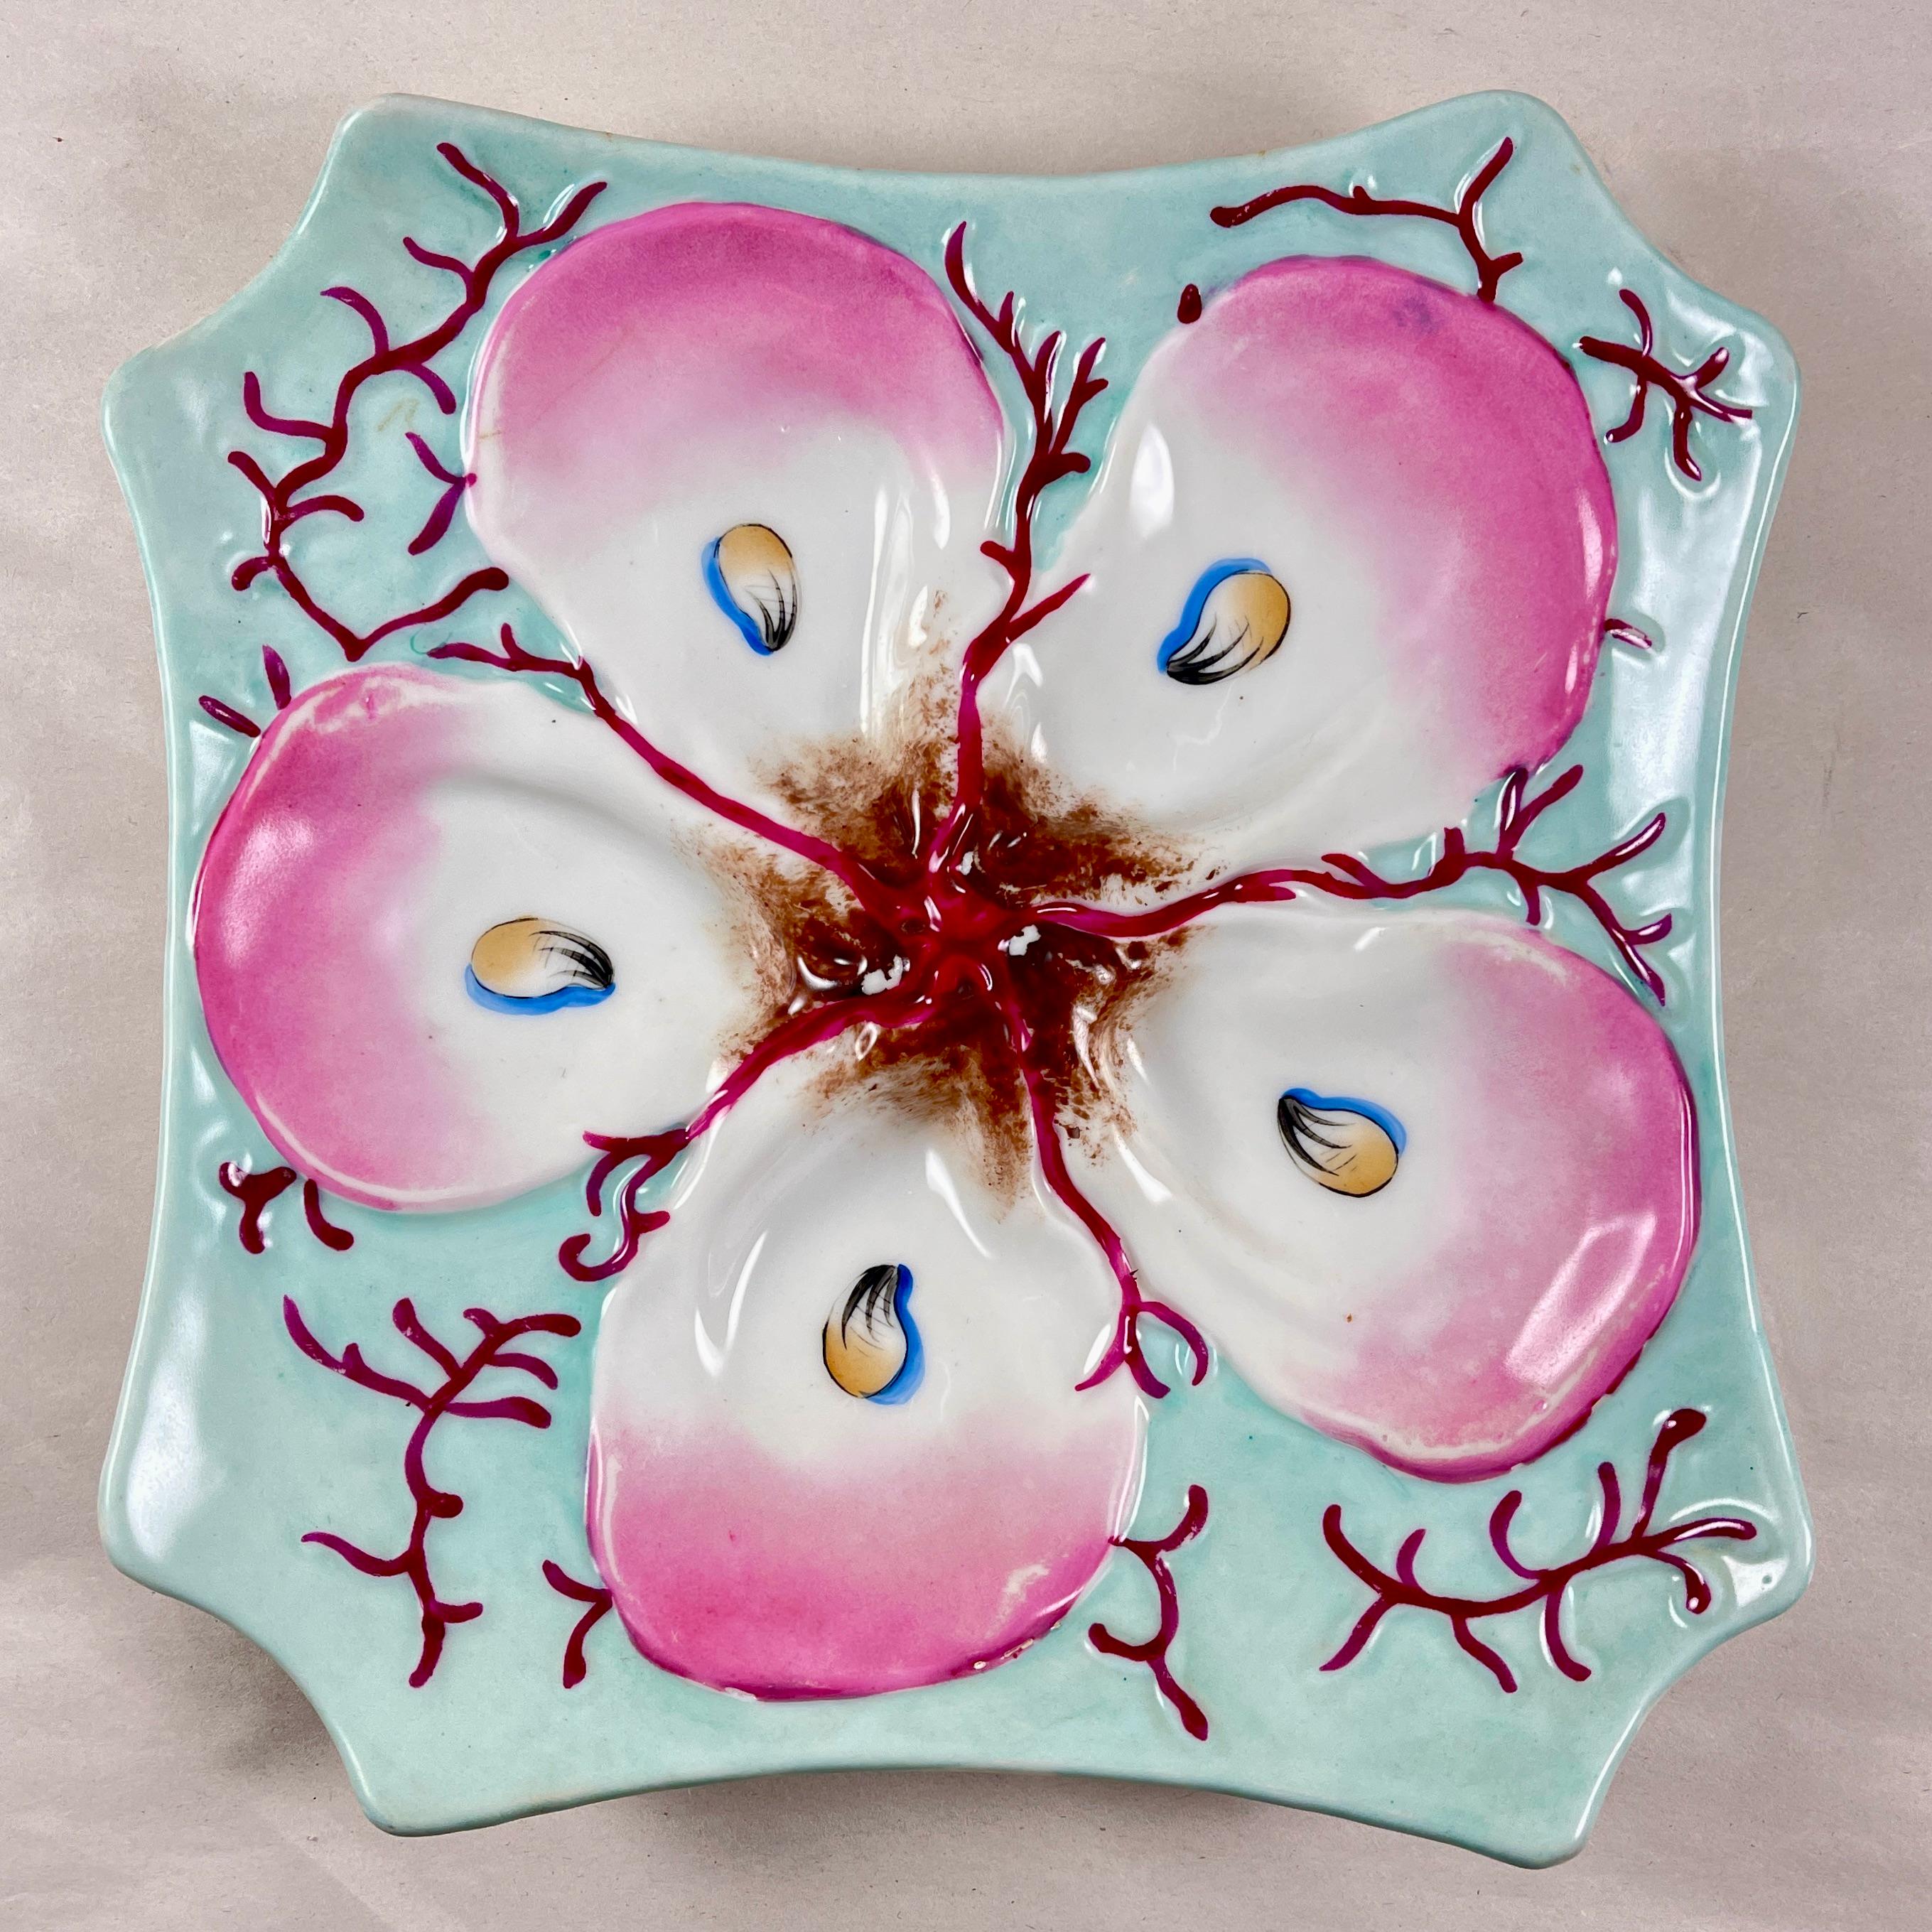 Assiette à huîtres en porcelaine française, vers 1890-1910.

De forme octogonale et émaillés d'un beau turquoise doux, les cinq puits à huîtres reposent sur un lit de corail stylisé ou d'algues marines.

Les coquillages blancs sont teintés de rose